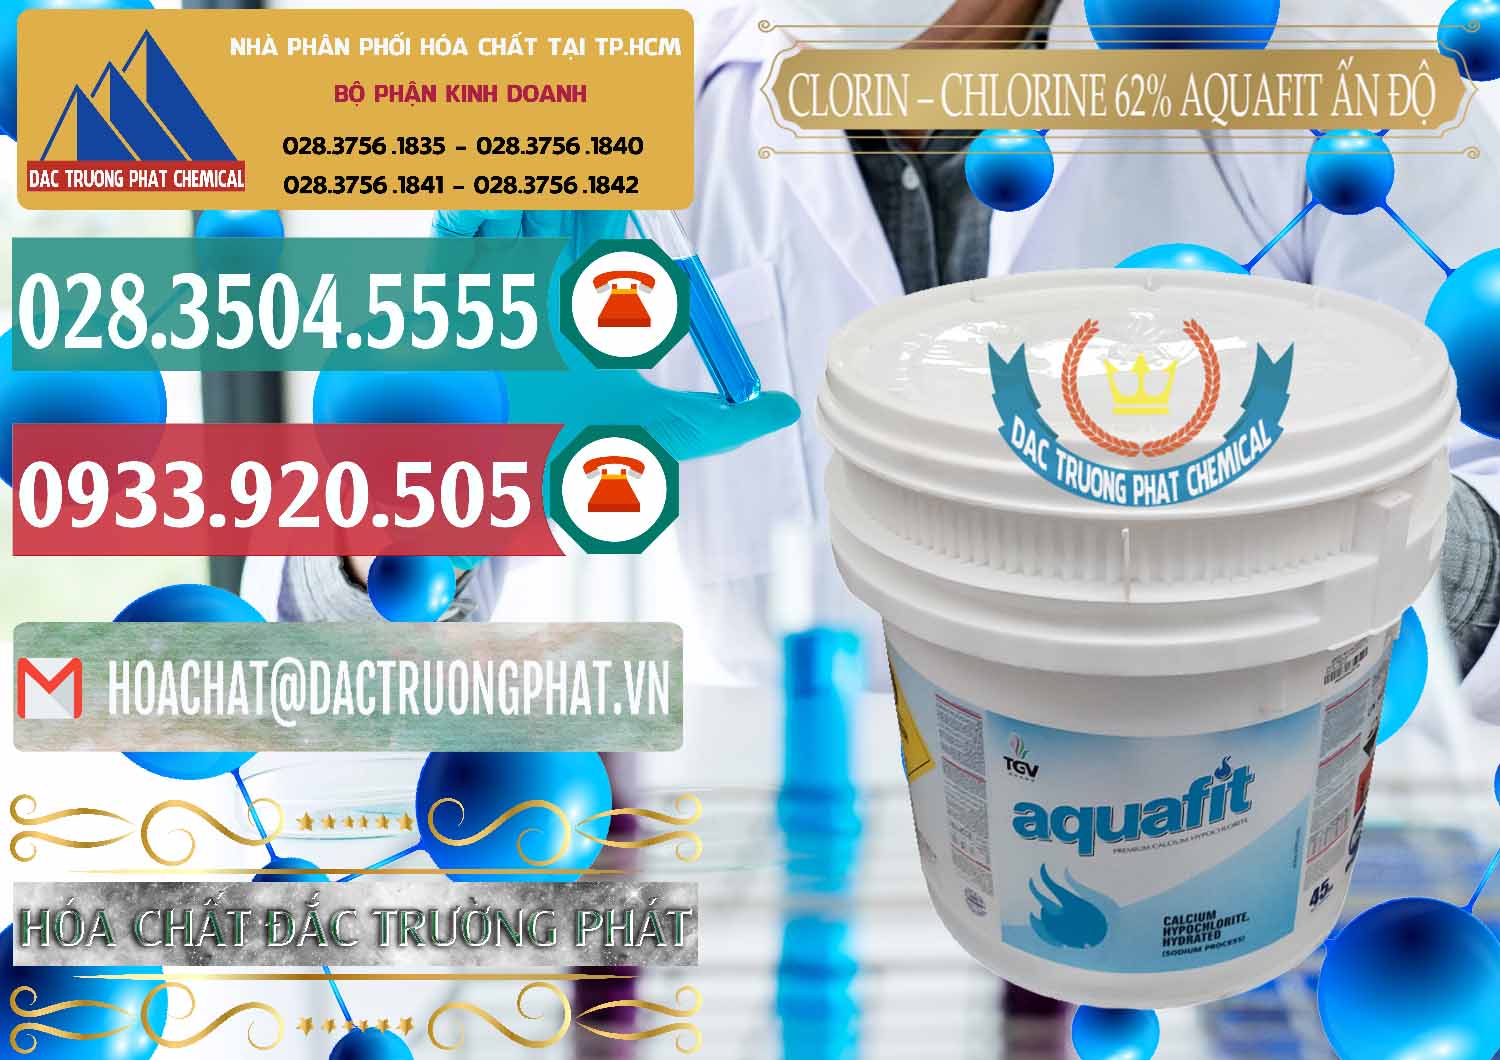 Nơi chuyên bán - phân phối Clorin - Chlorine 62% Aquafit Thùng Lùn Ấn Độ India - 0057 - Cty chuyên cung cấp - nhập khẩu hóa chất tại TP.HCM - muabanhoachat.vn